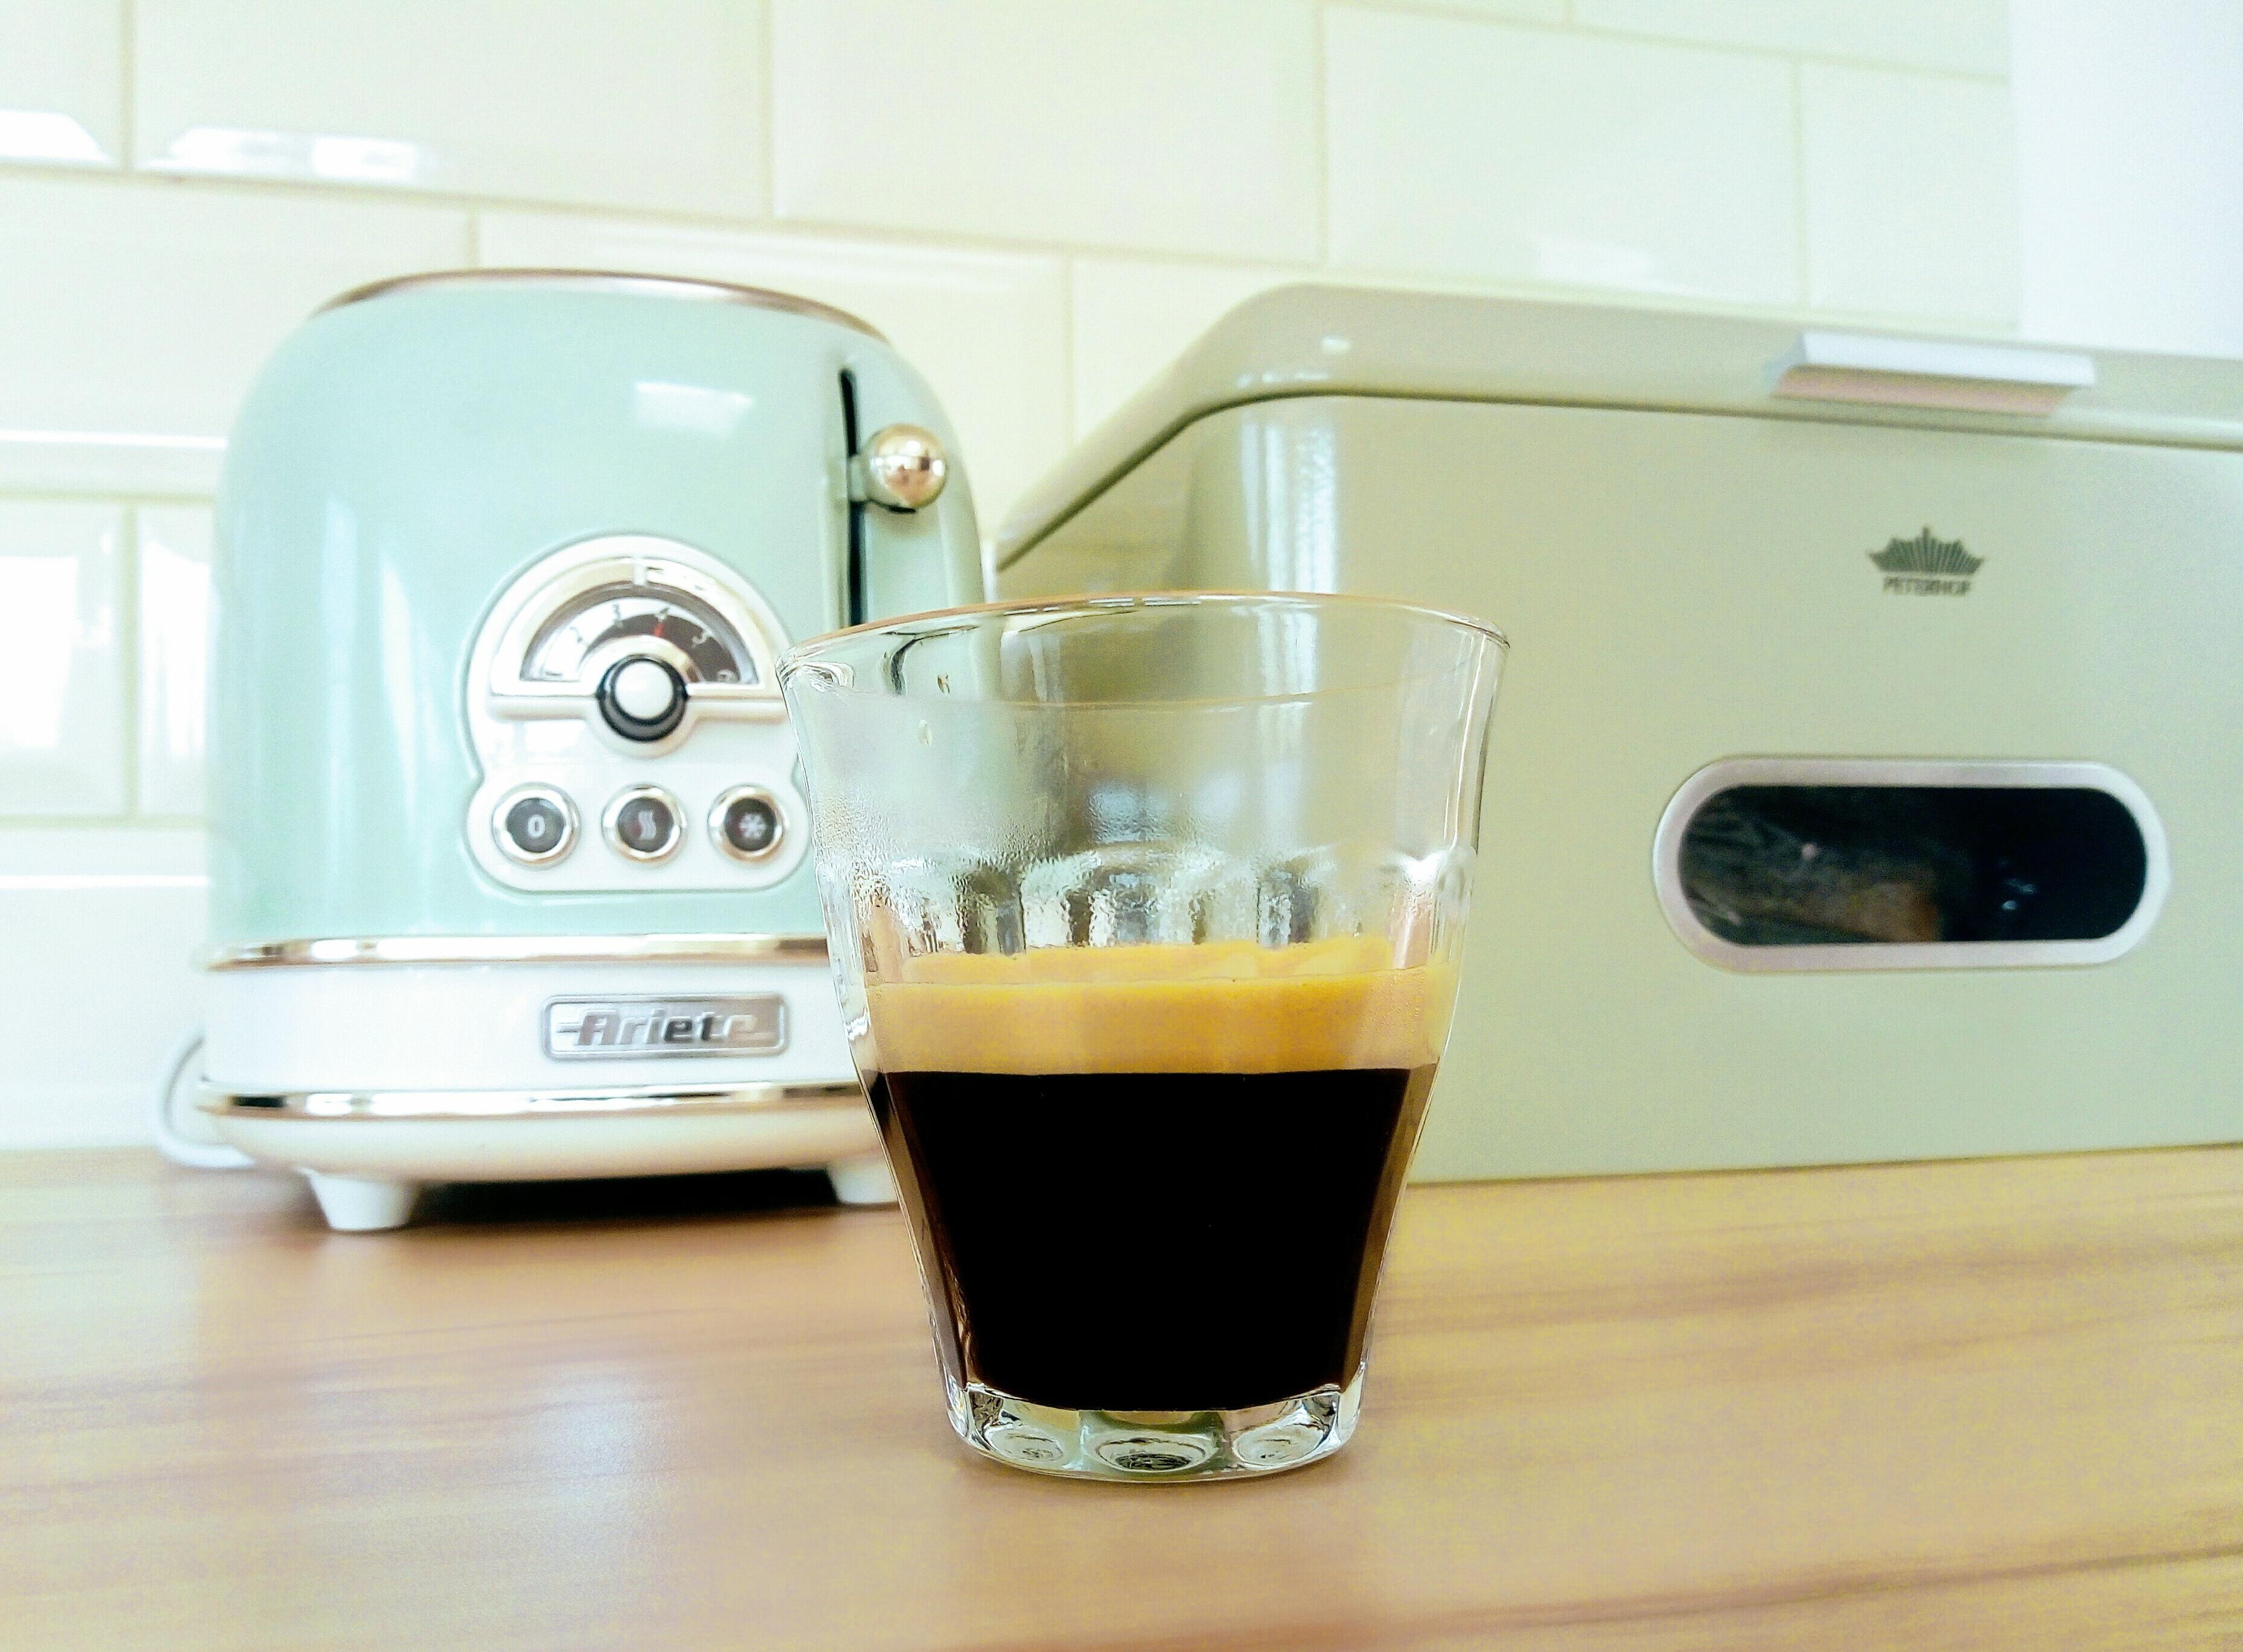 Morgenkaffee
#kaffee